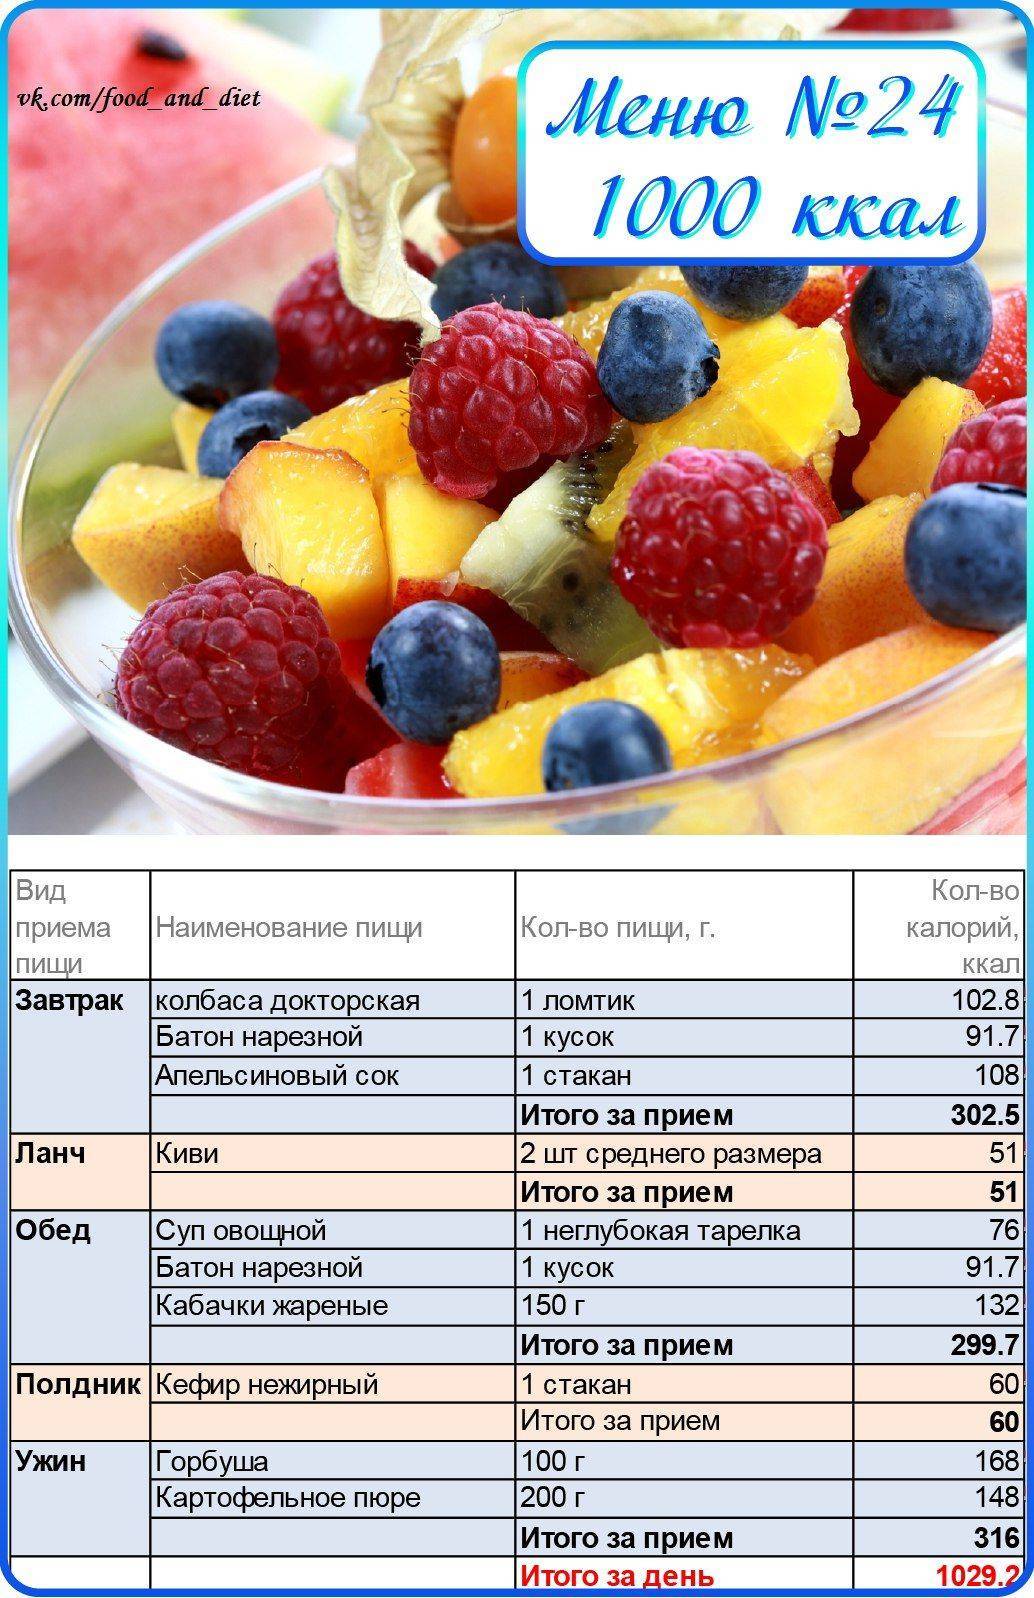 Вкусное меню на 1200 калорий в день: правильное питание для похудения